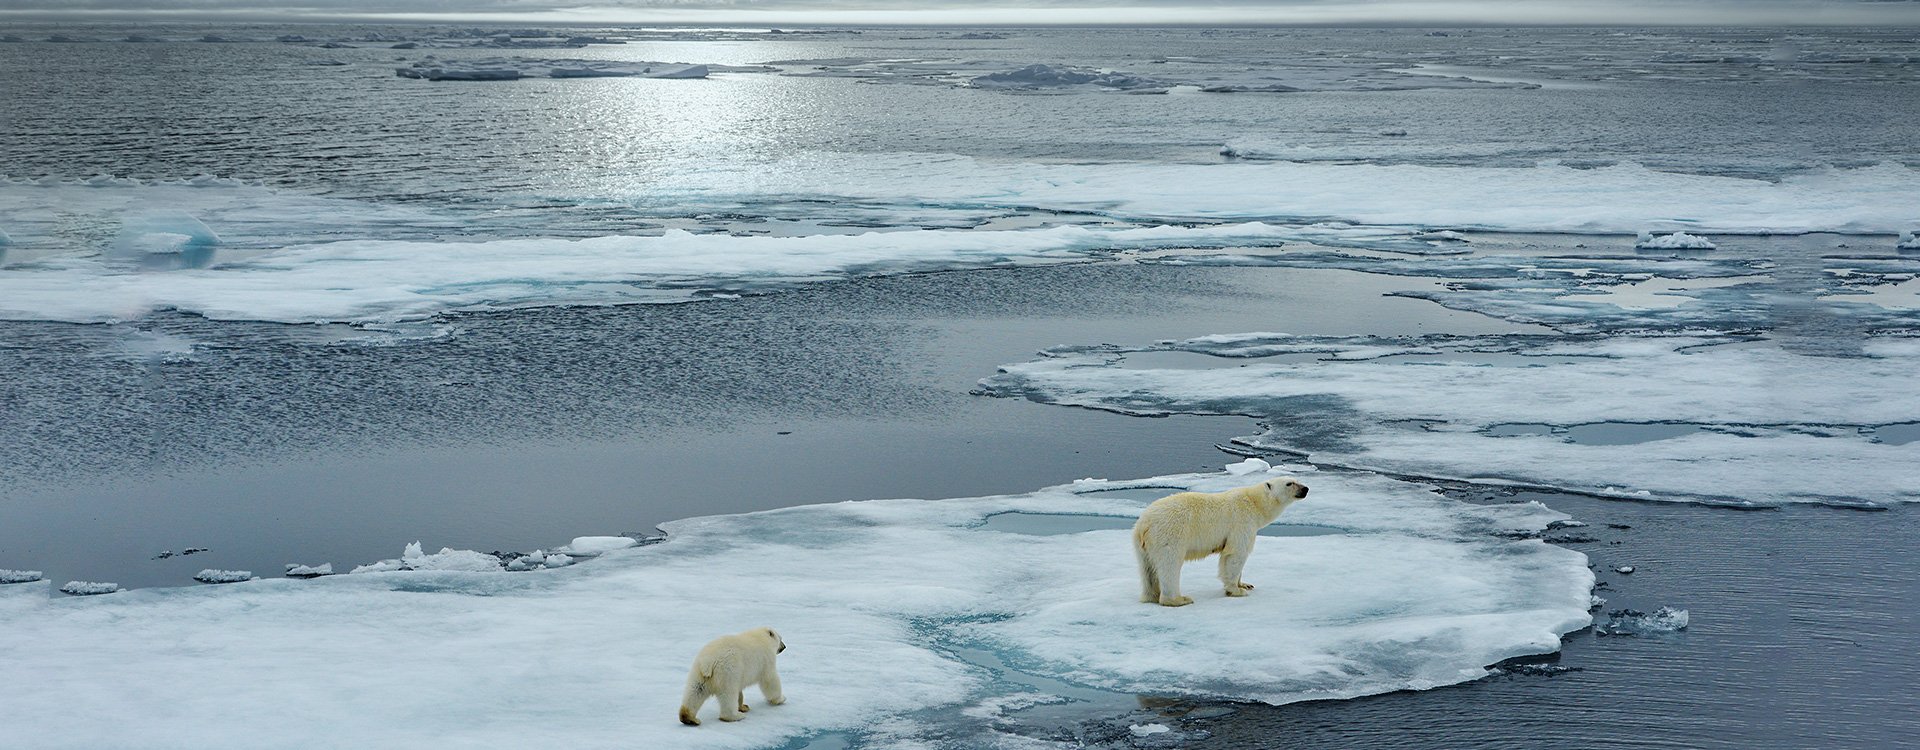 Arctic_Polar Bears